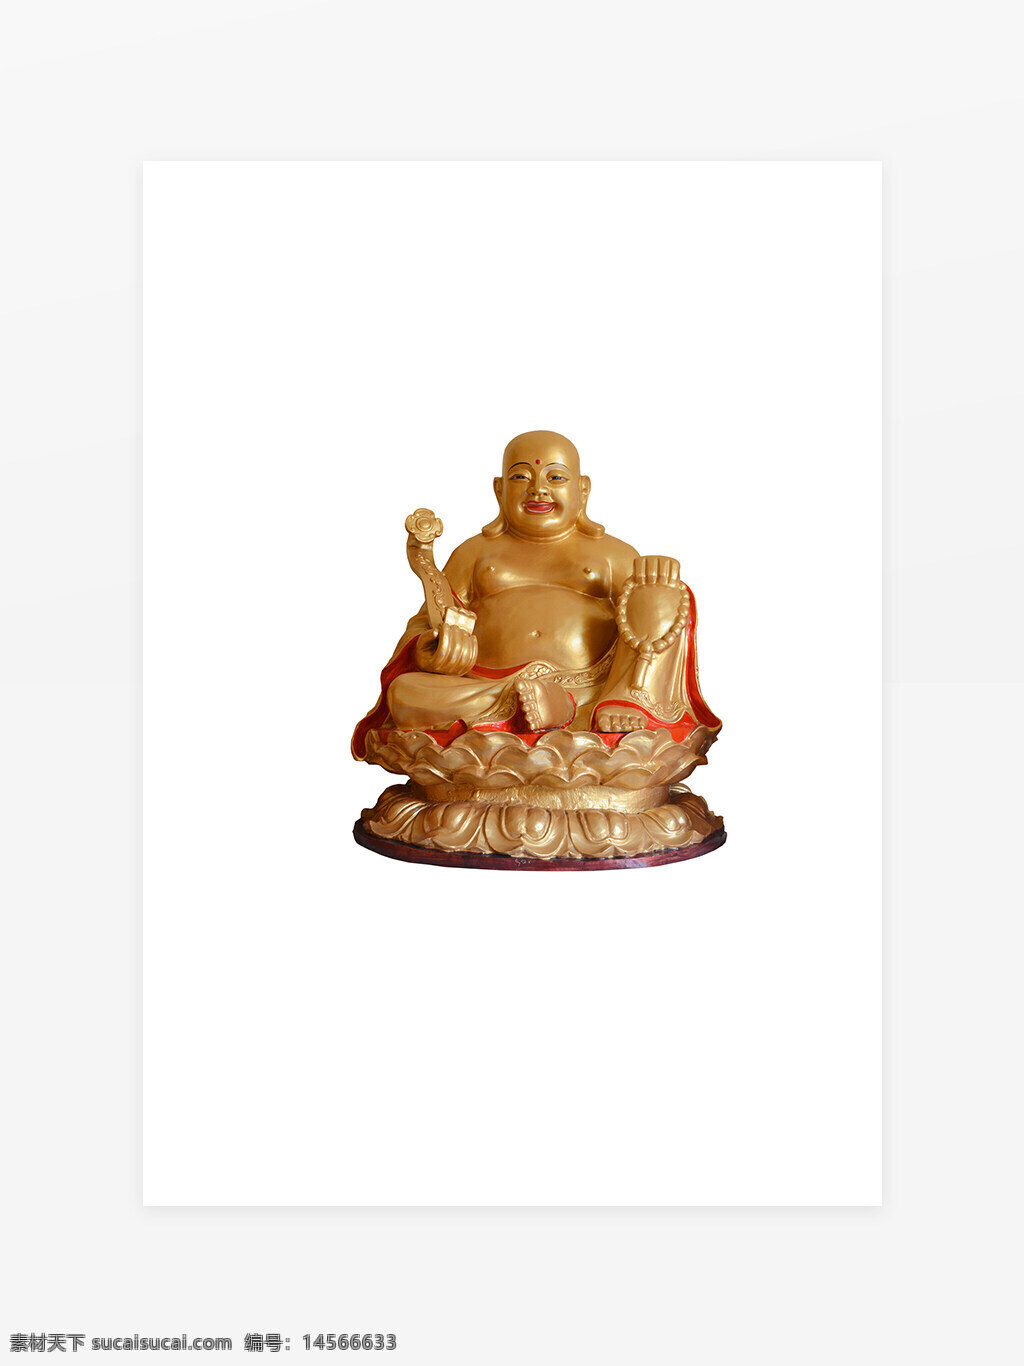 佛教人物元素 背景墙 弥勒佛 立体佛像 佛教 宗教 神话人物 宗教文化 佛教文化